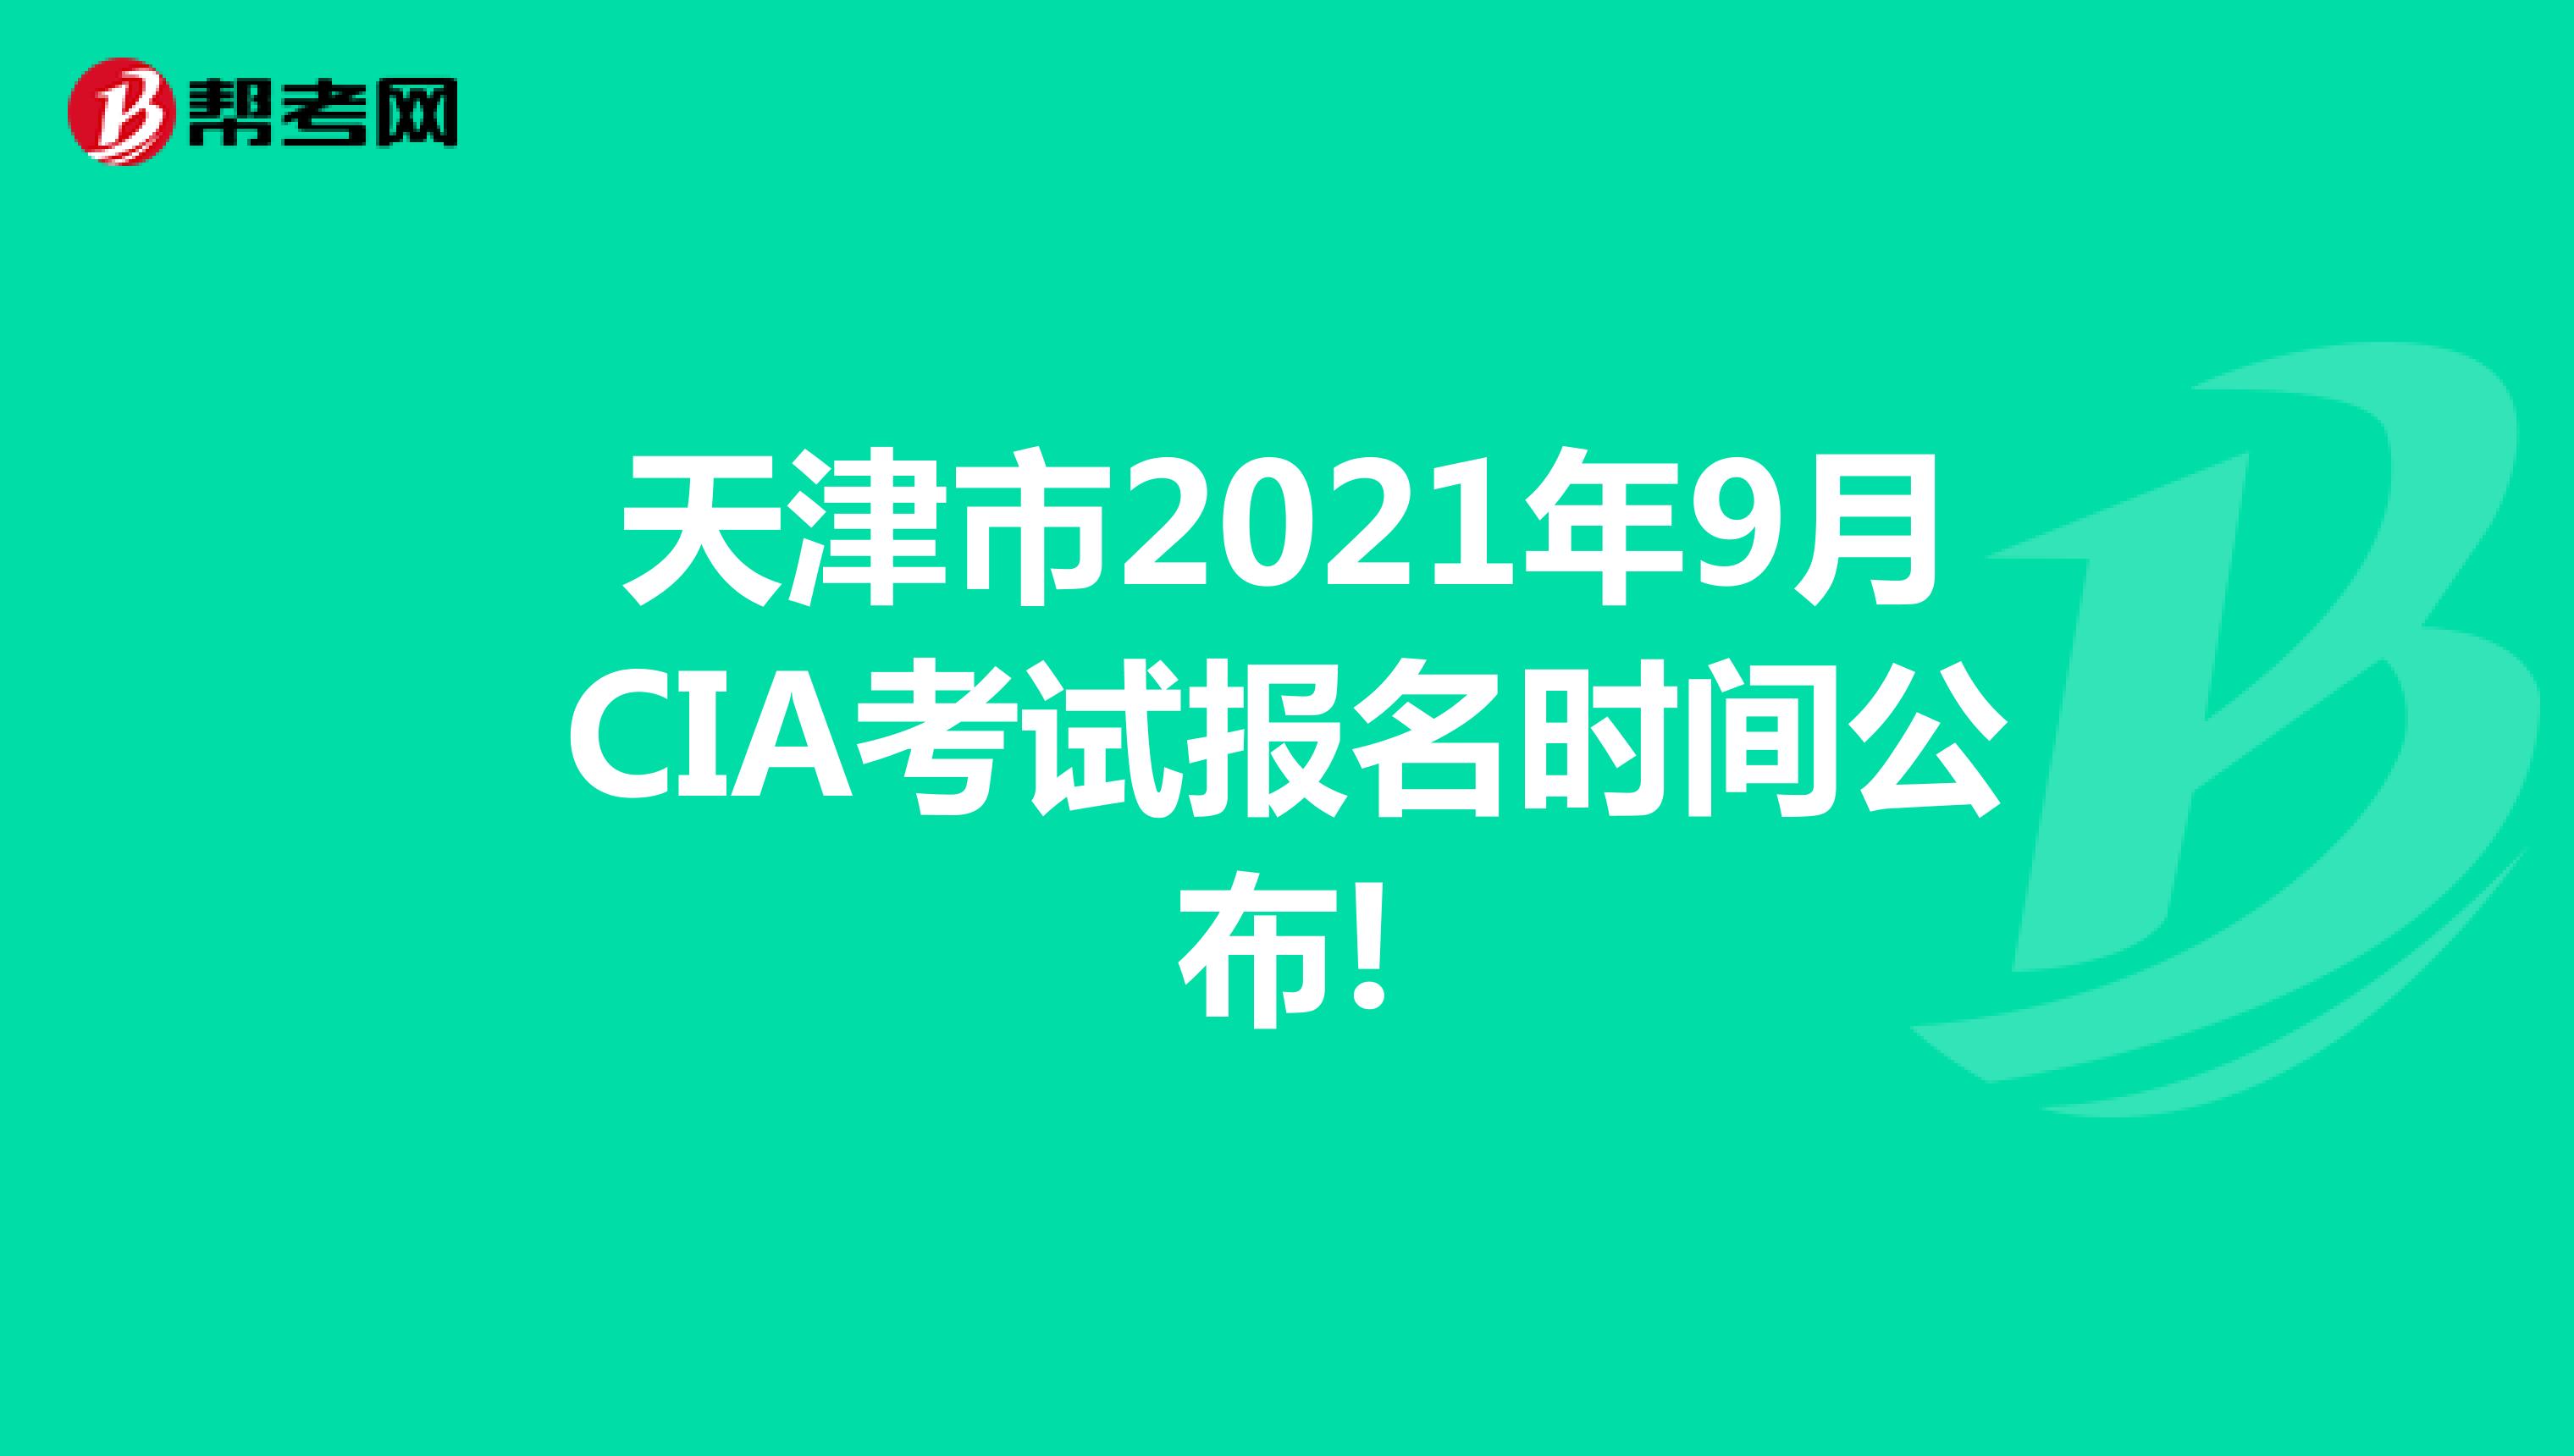 天津市2021年9月CIA考试报名时间公布!